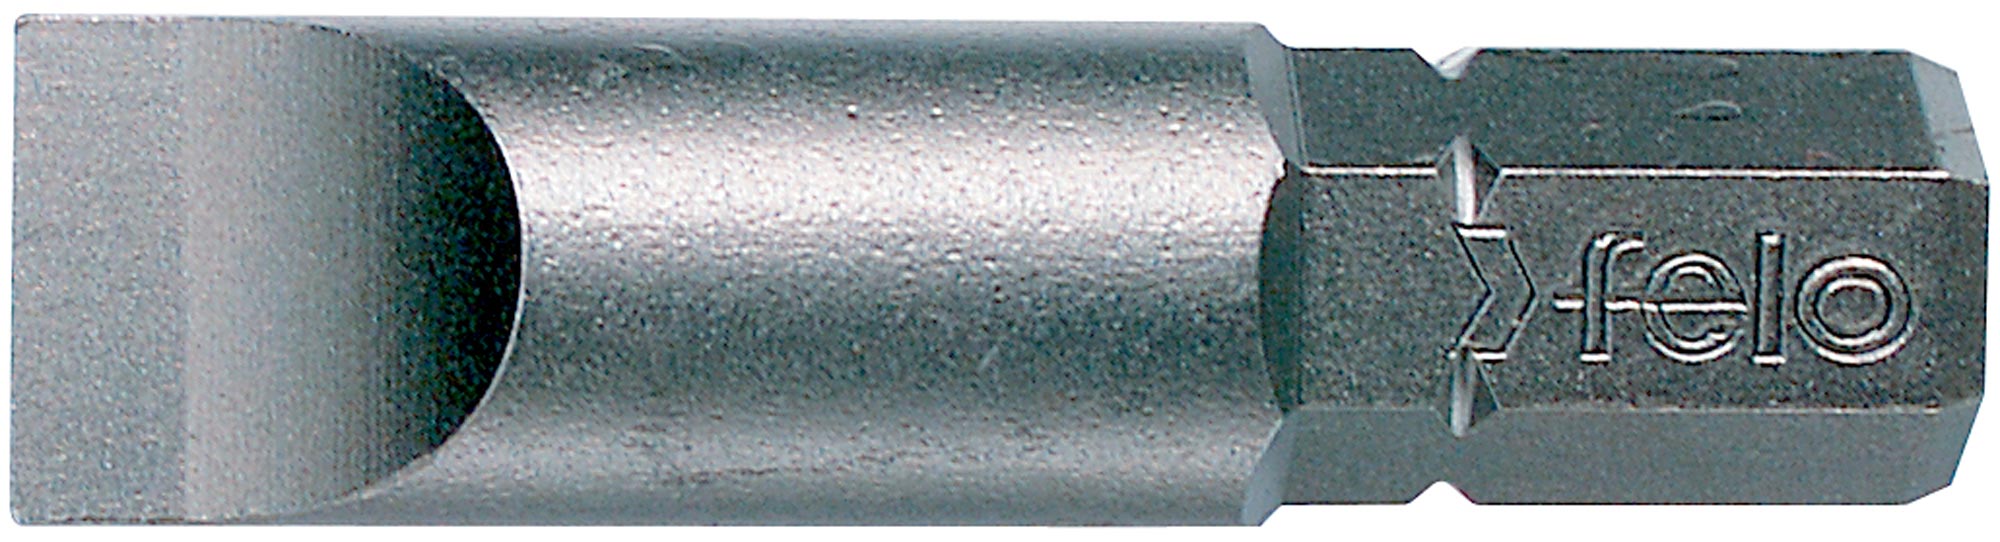 Felo Industrie Bit C 8 Schlitz SL 5,5 x 0,8 x 32 mm - VE 10 Stück Schlitz Schrauben Bit - Industrie Serie (FL-07051410-VE10) Bild-01